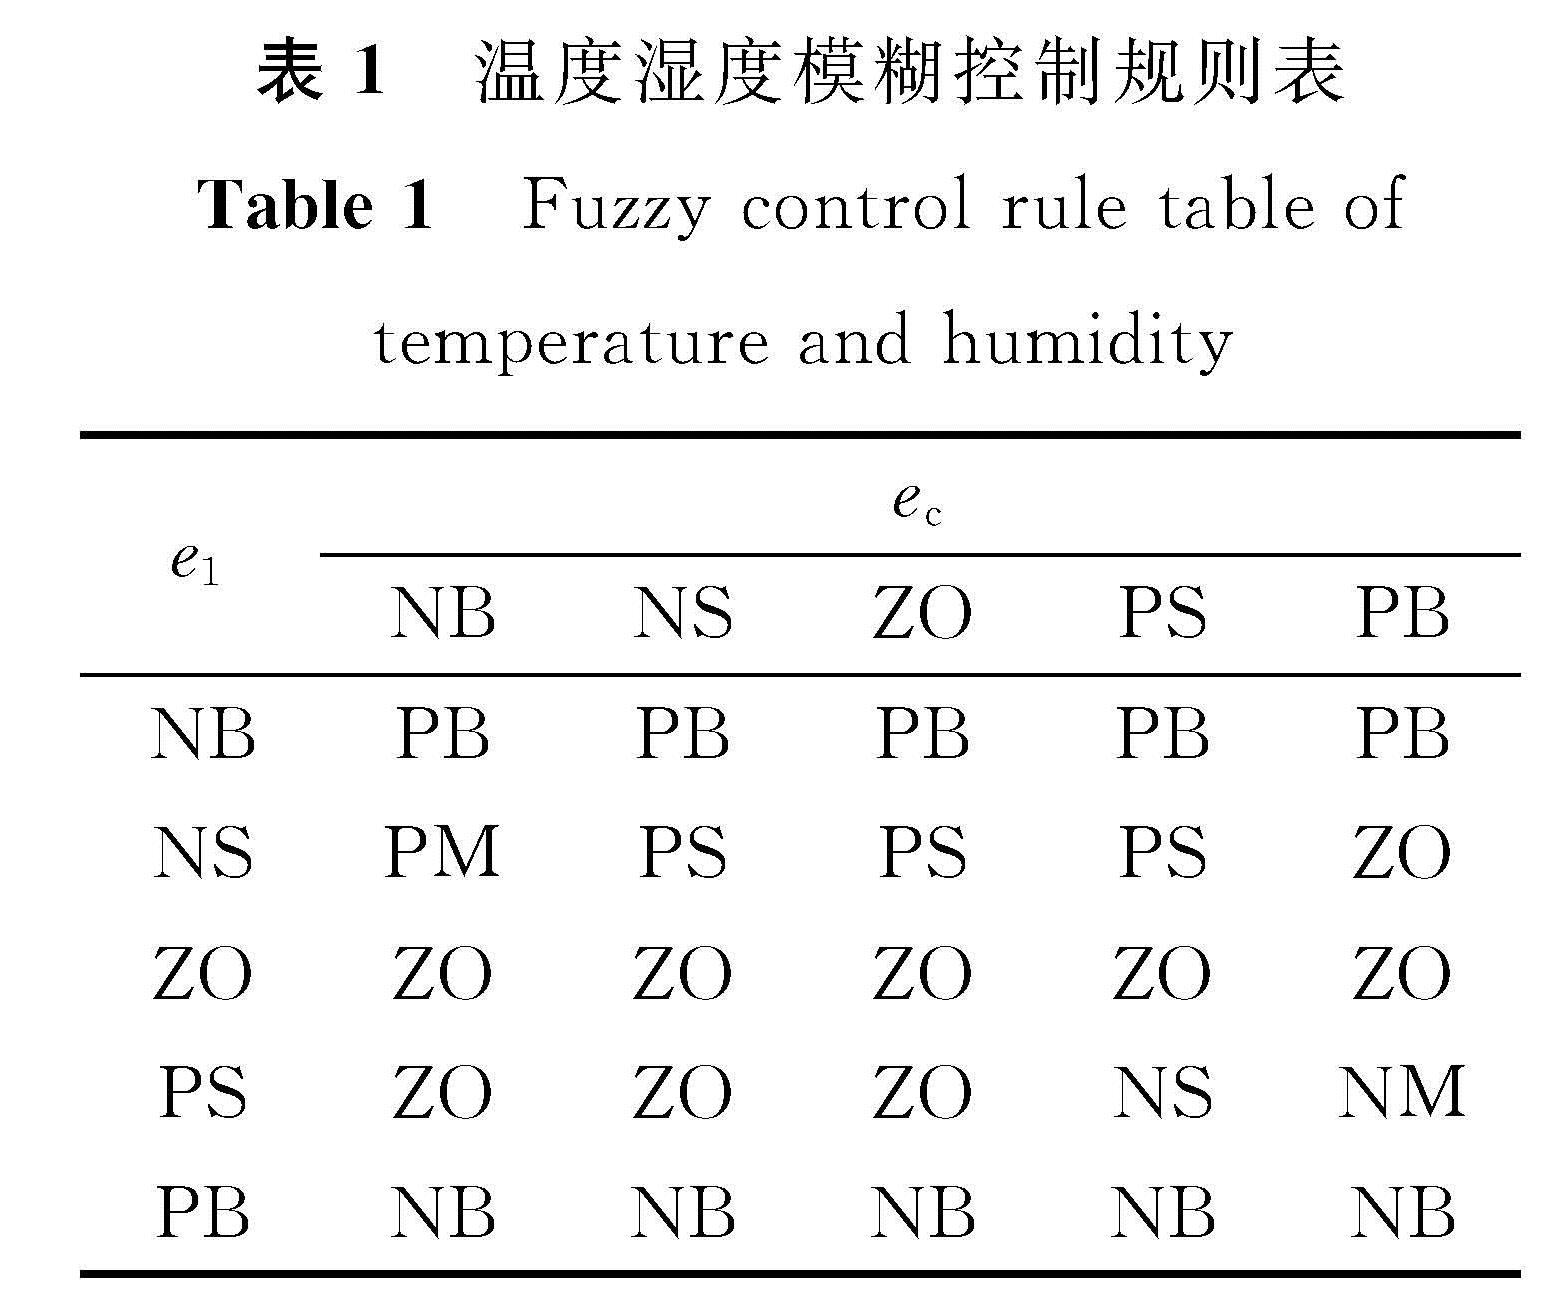 表1 温度湿度模糊控制规则表<br/>Table 1 Fuzzy control rule table of temperature and humidity